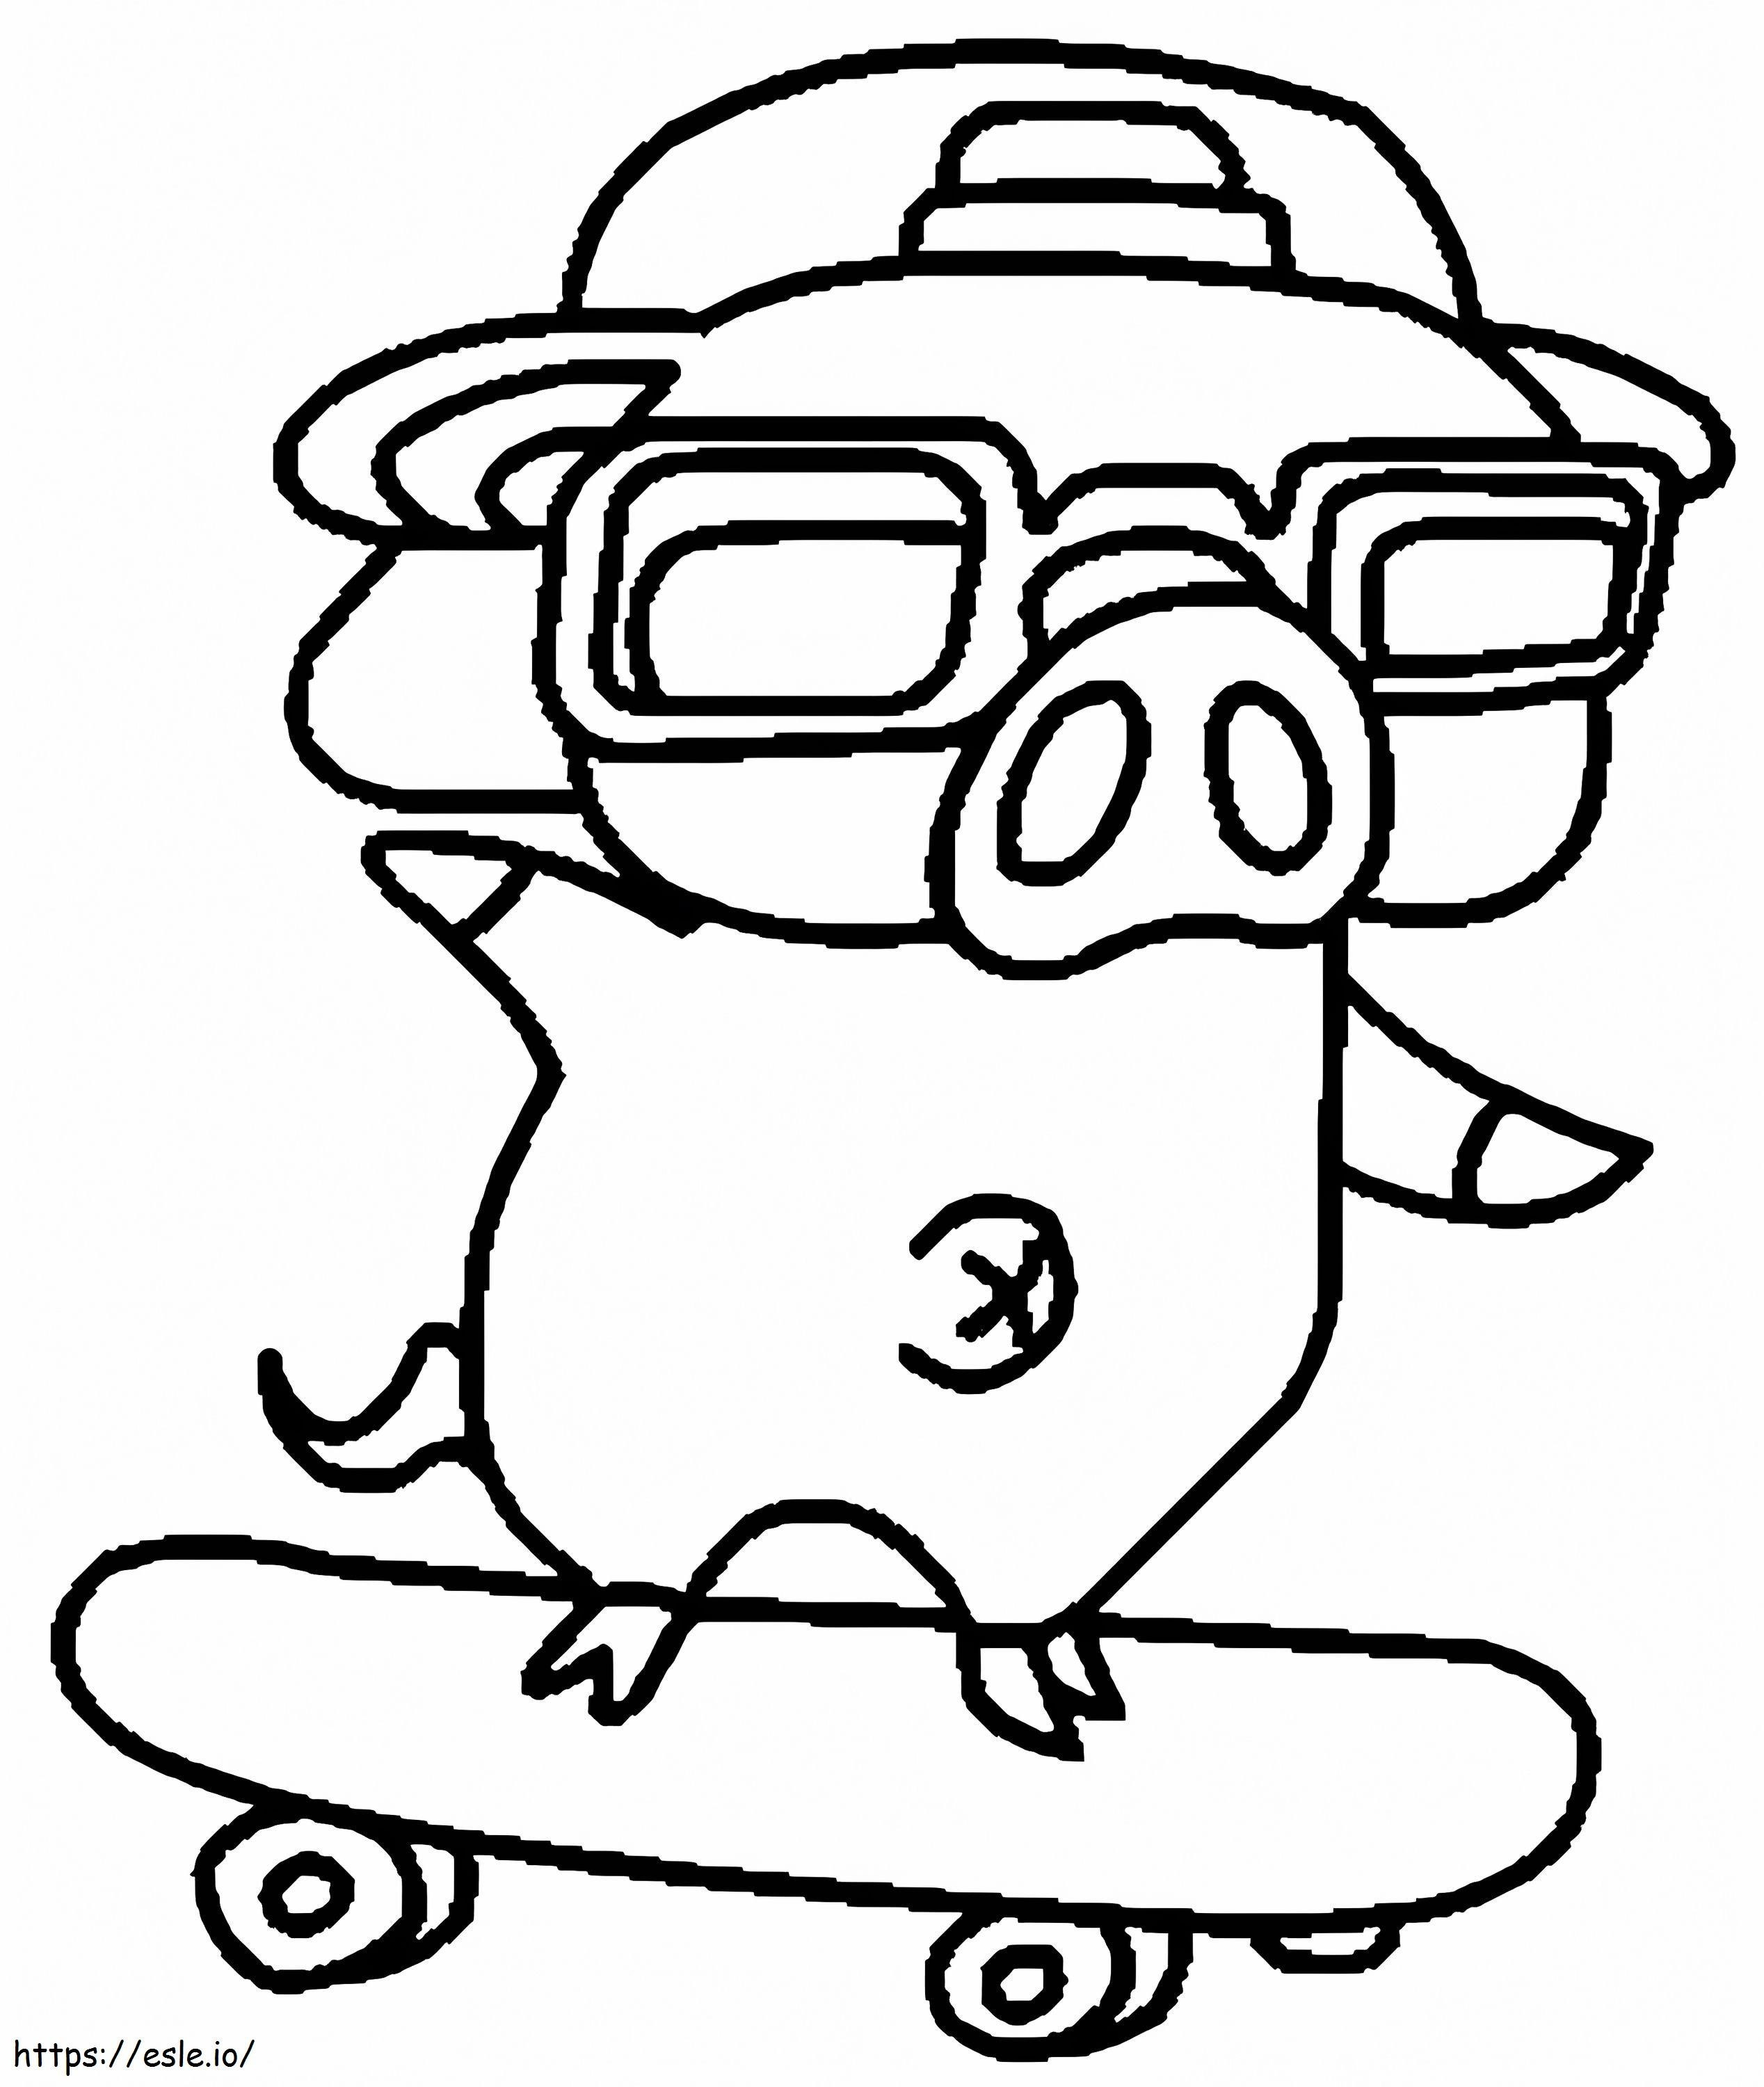 Ein Schwein mit Skateboard ausmalbilder